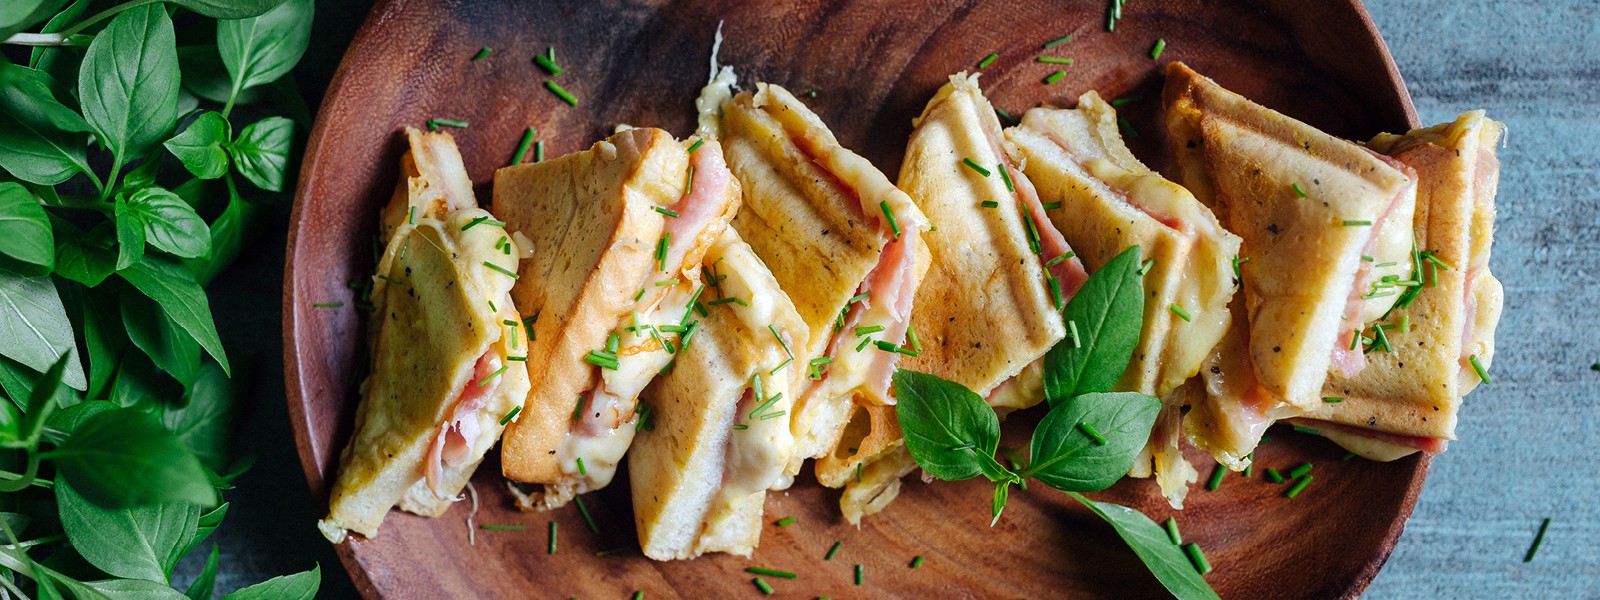 Französischer Toast gesalzen - Monte Cristo Sandwich